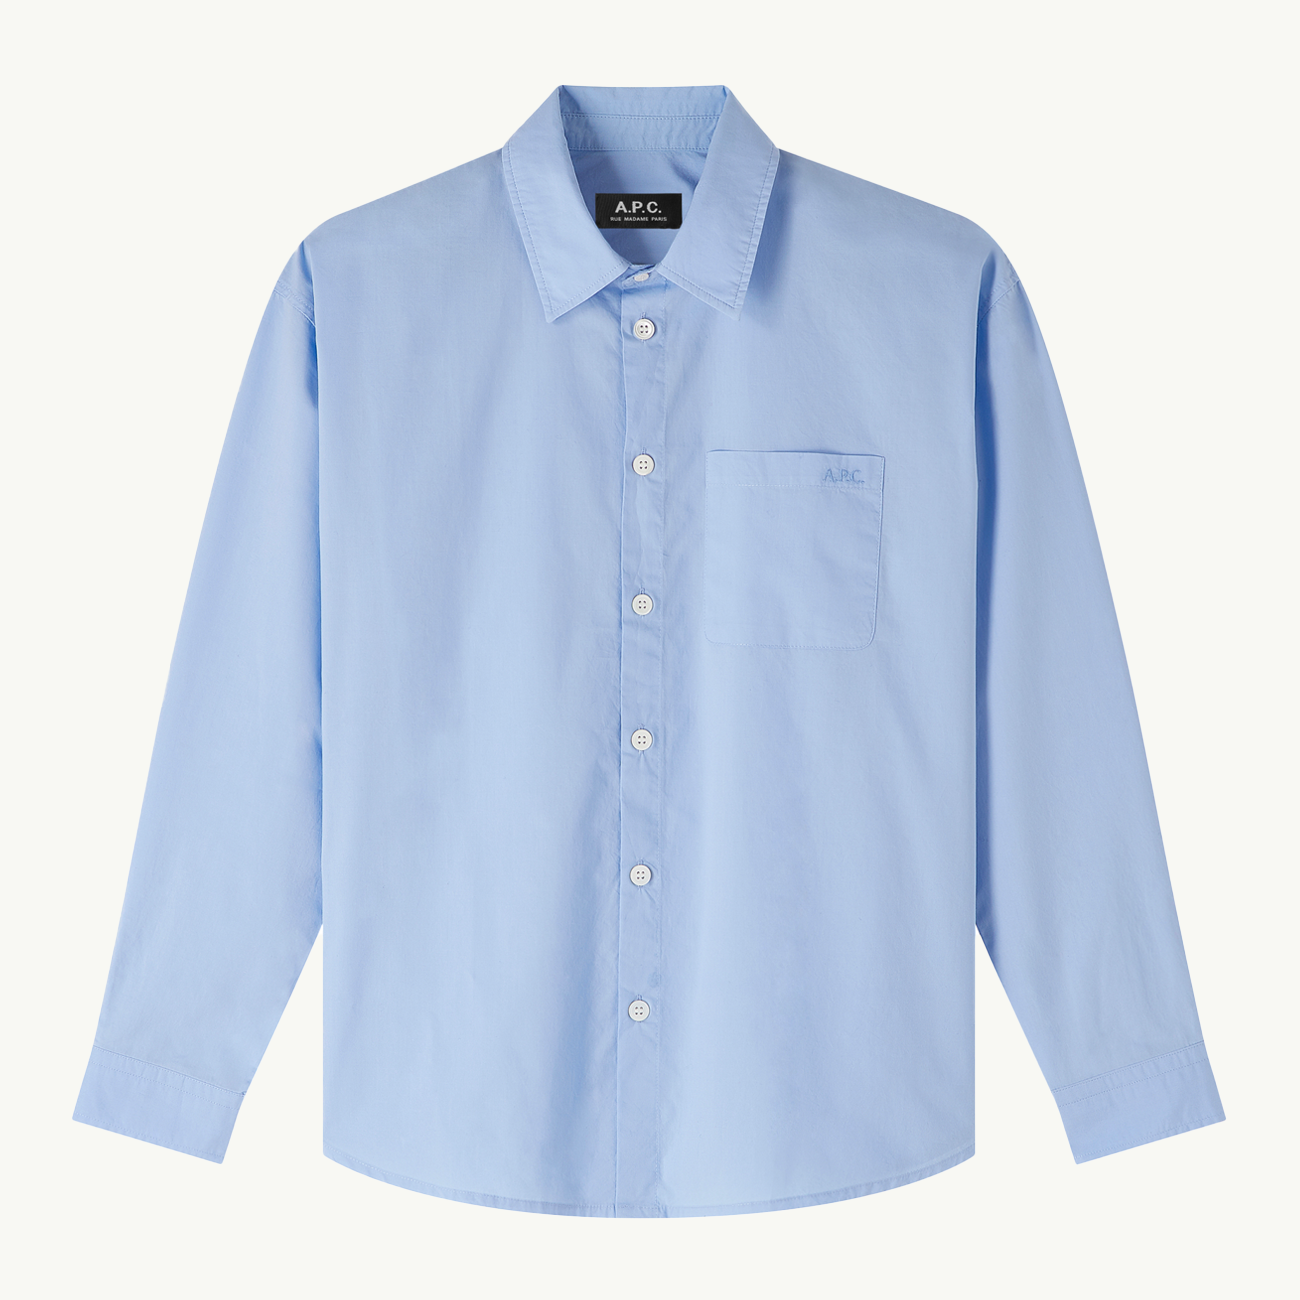 Women's Embroidered Boyfriend Shirt - Pale Blue